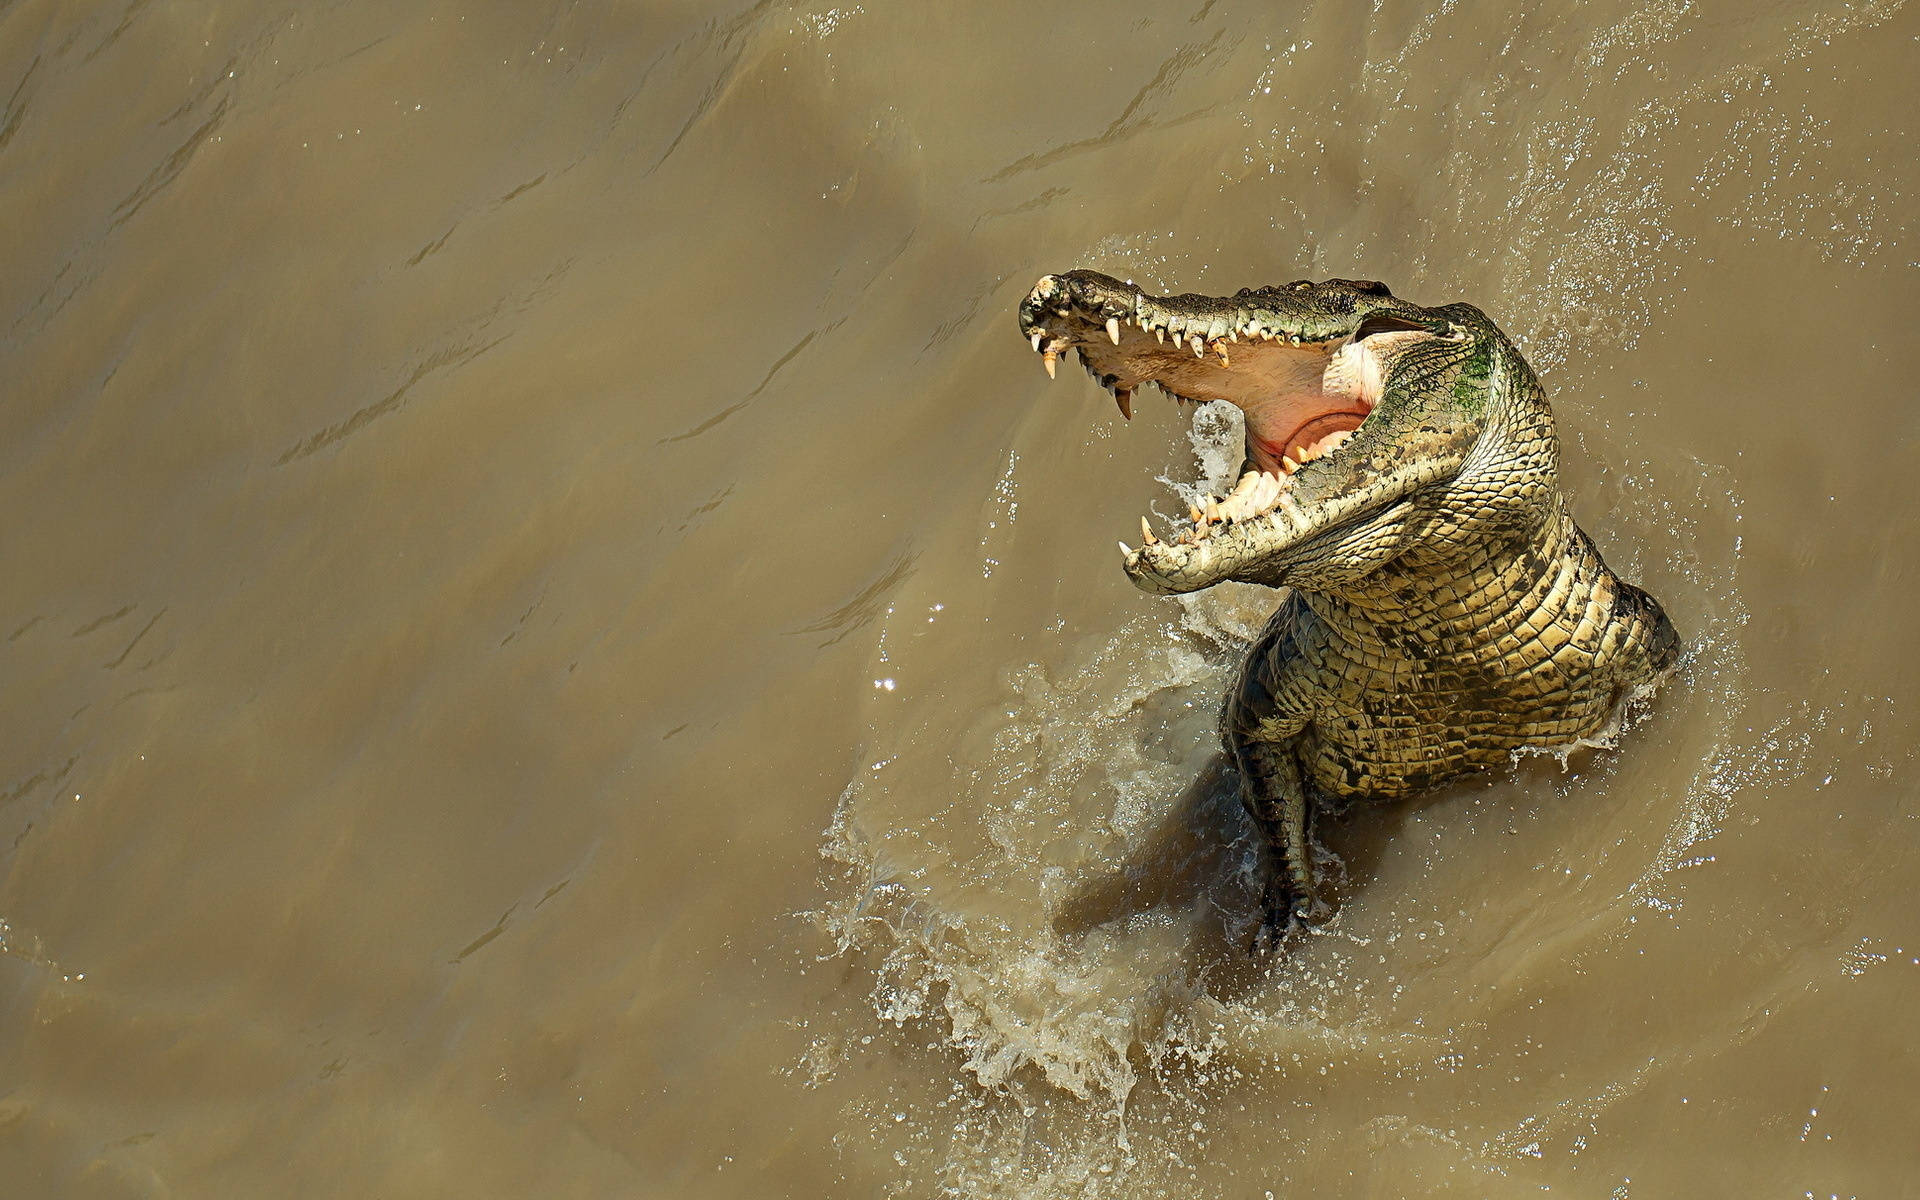 Cool Alligator Shot Background